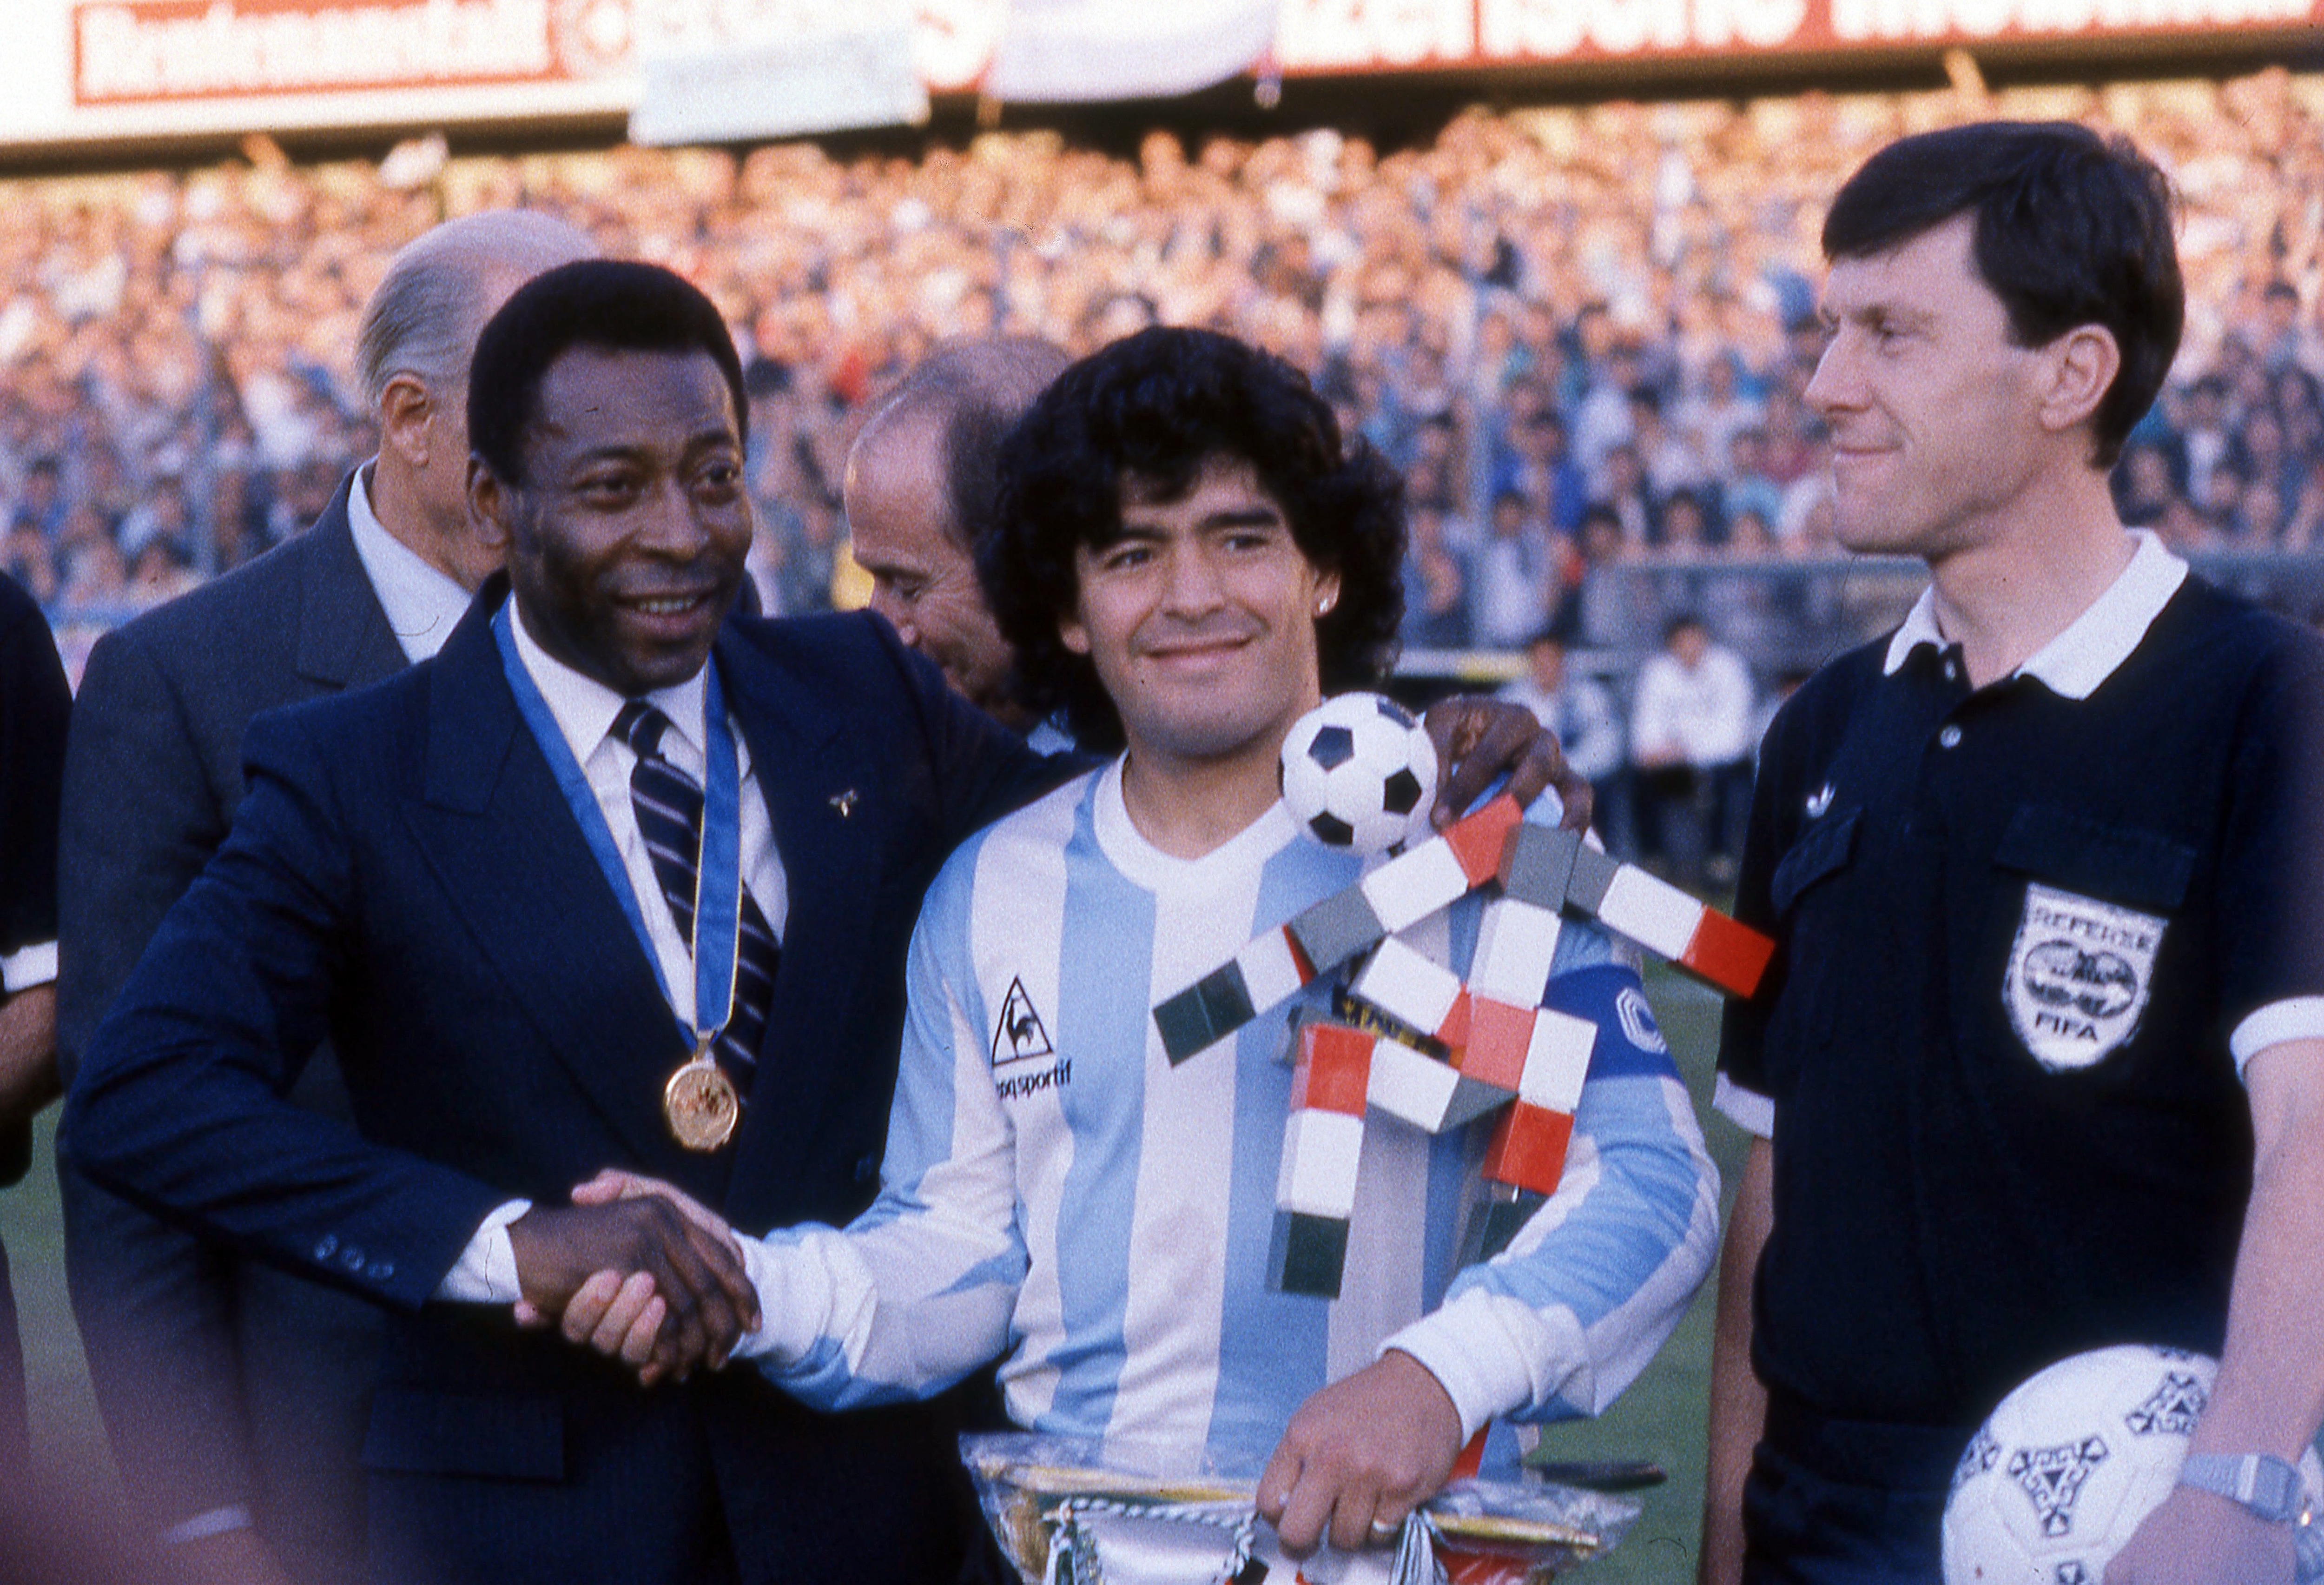 Mondiale Italia 1990: Pelè insieme a Diego Armando Maradona. I due sono considerati i più forti giocatori di calcio di sempre 